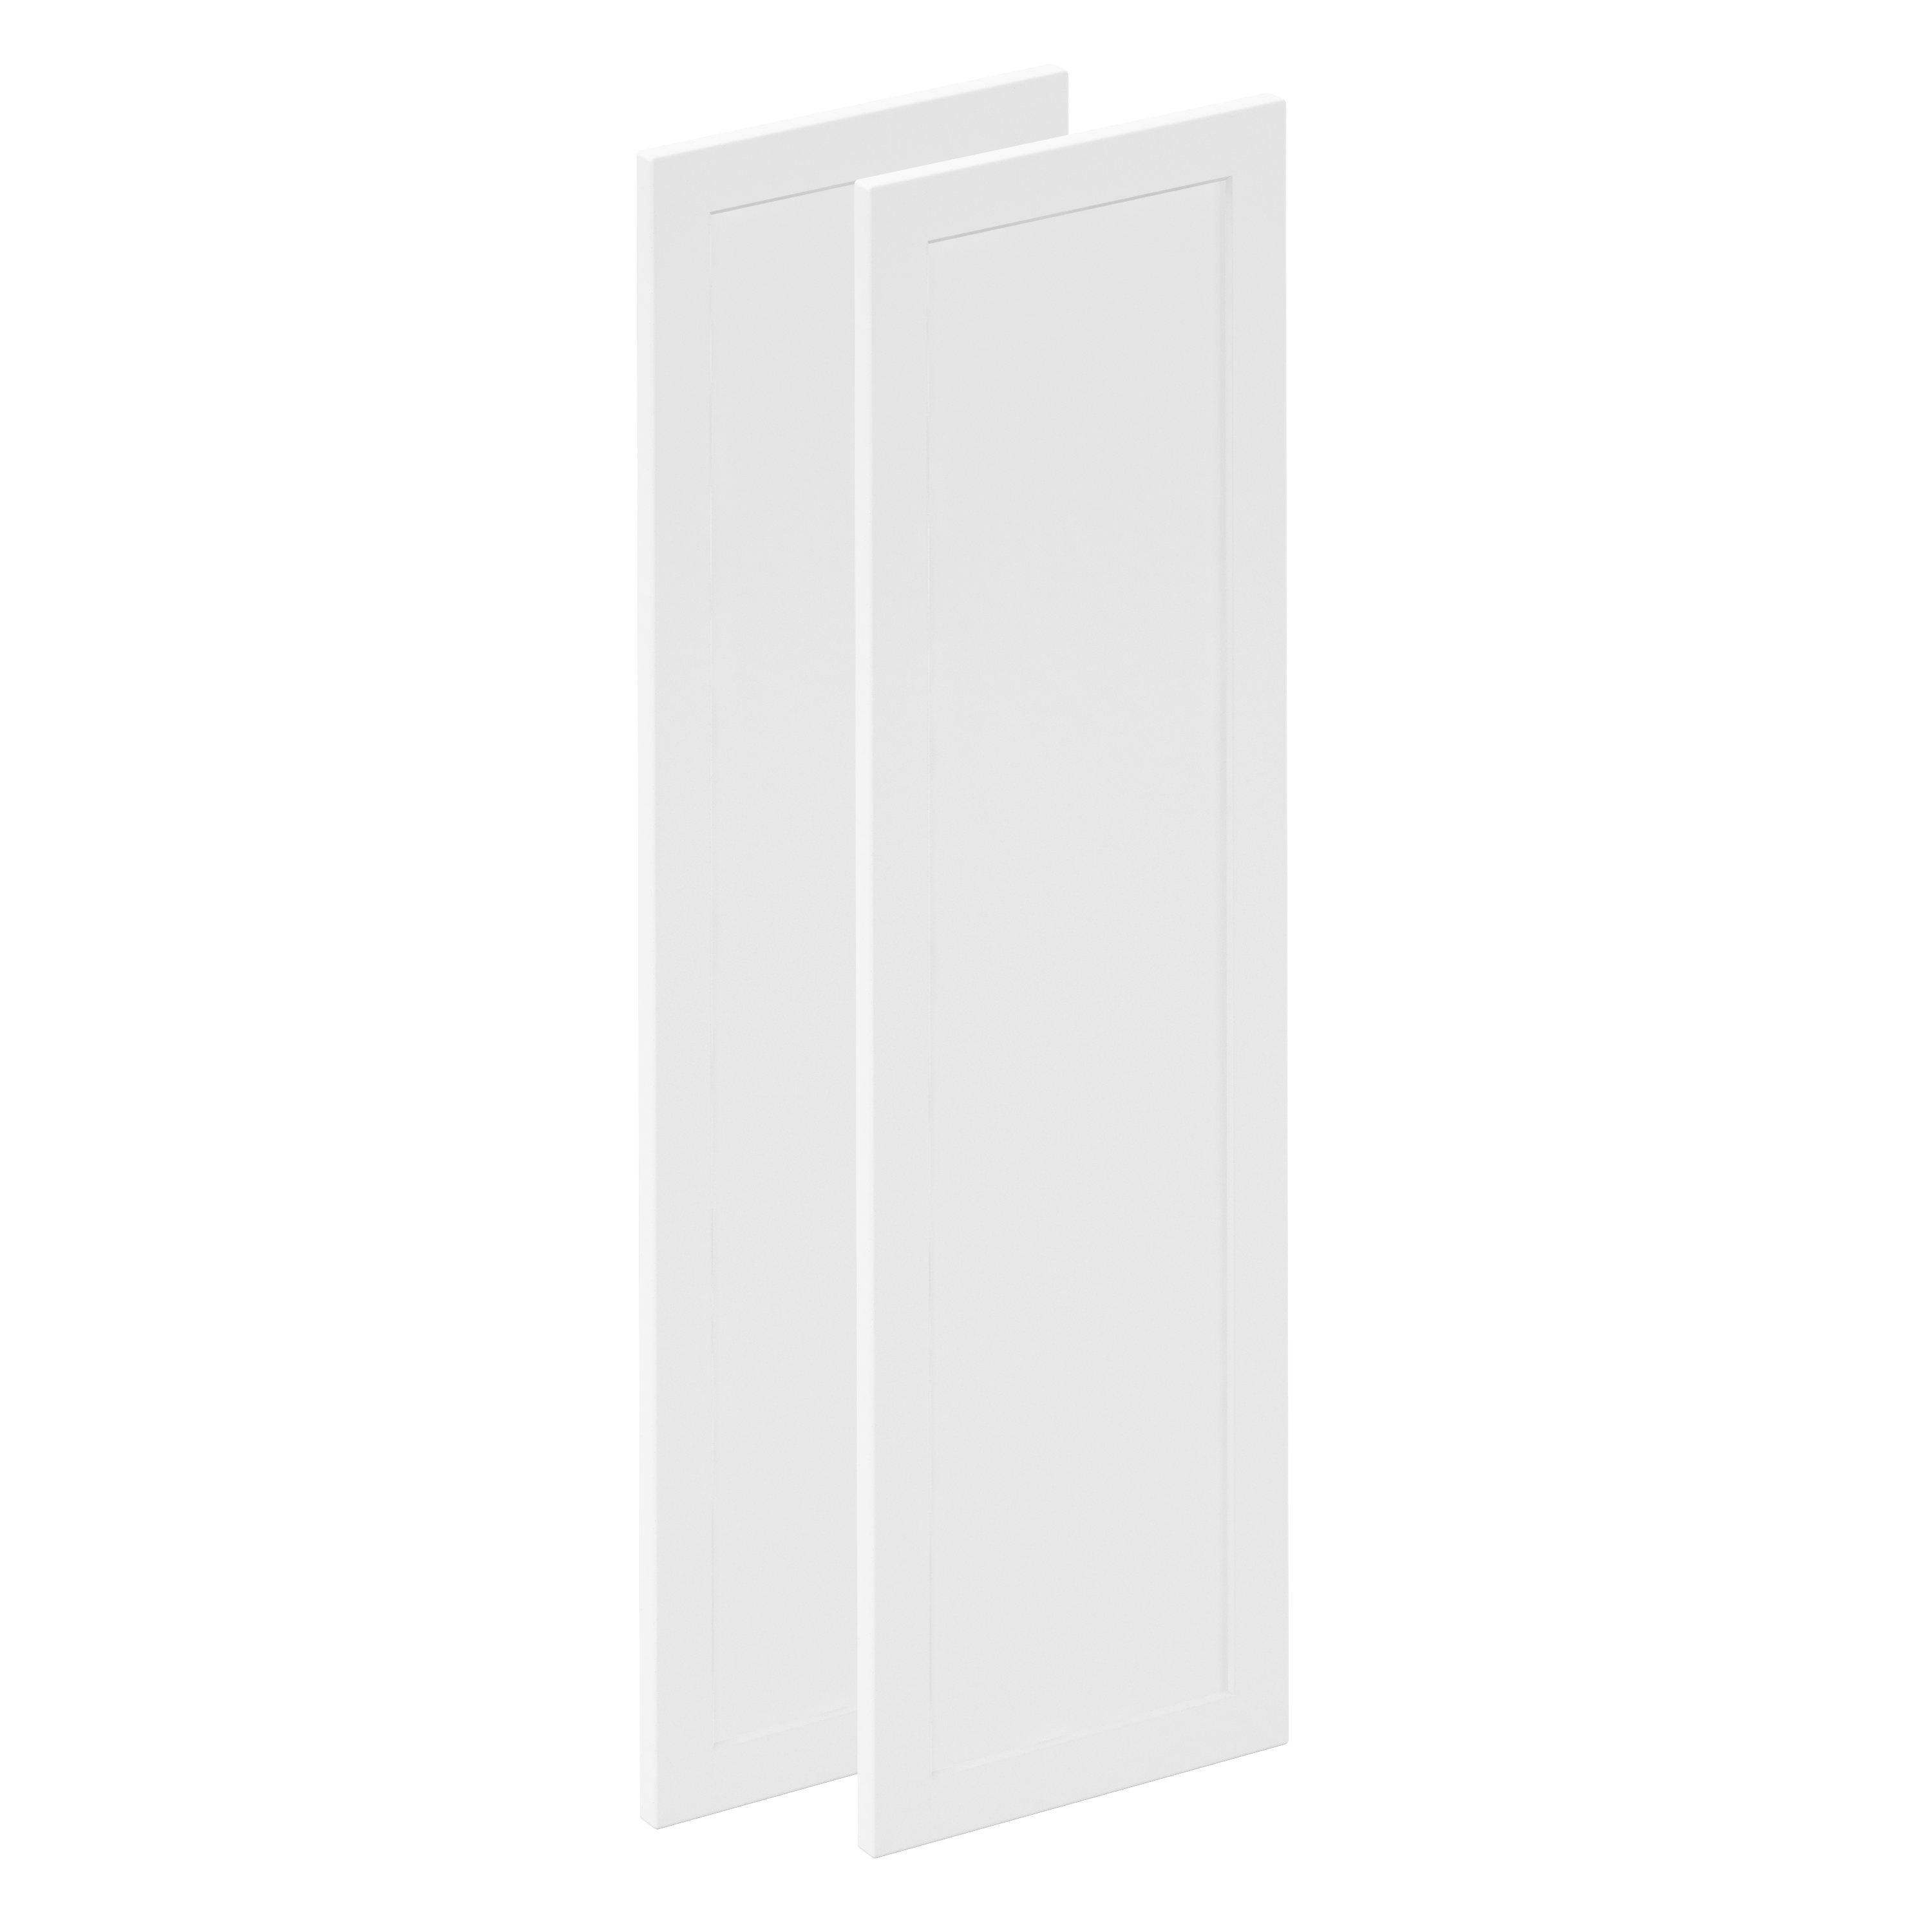 Lote de 2 puertas mueble de cocina newport blanco mate h 102.4 x l 29.7 cm